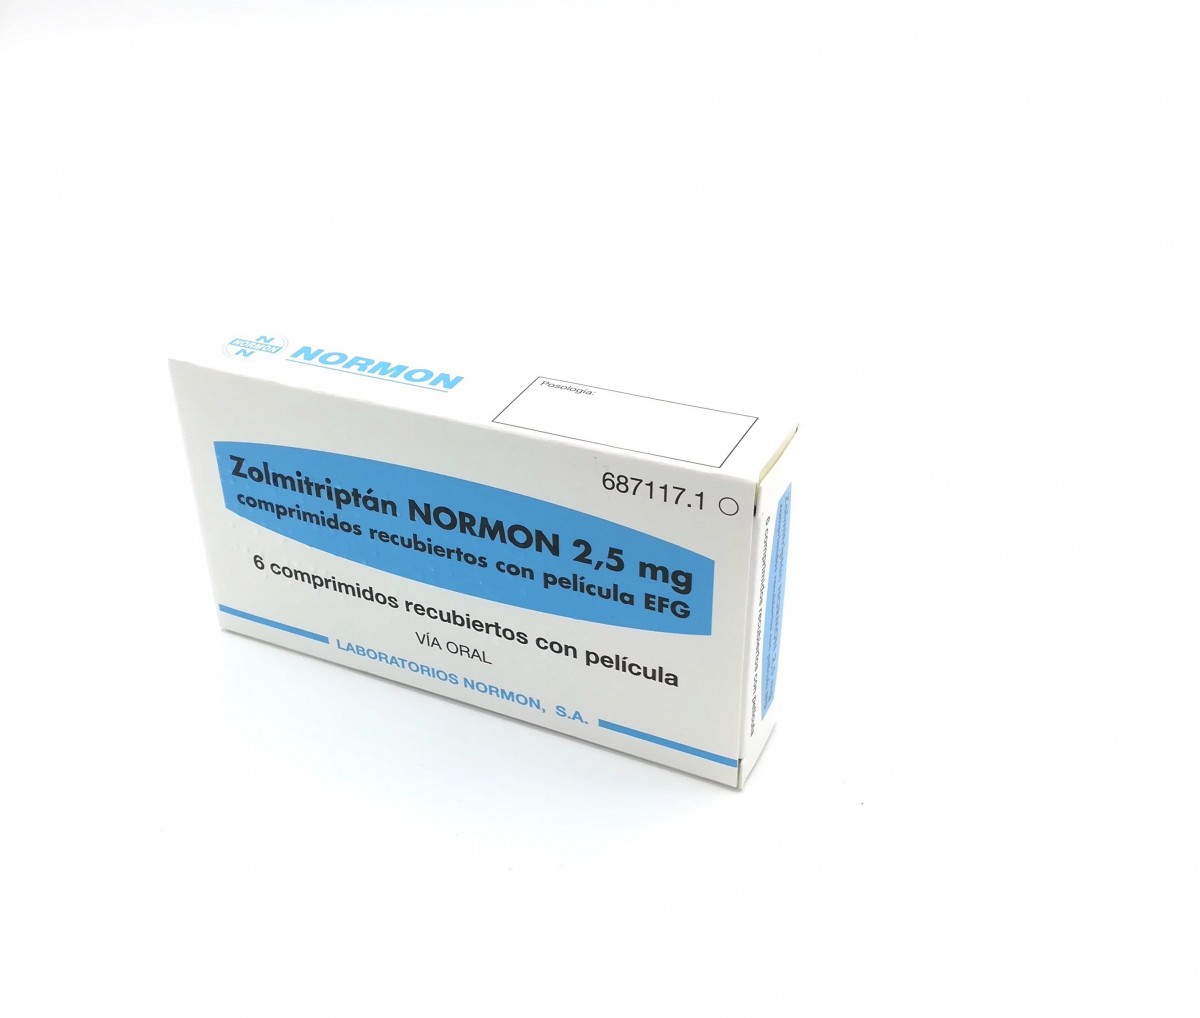 ZOLMITRIPTAN NORMON 2,5 mg COMPRIMIDOS RECUBIERTOS CON PELICULA EFG , 3 comprimidos fotografía del envase.